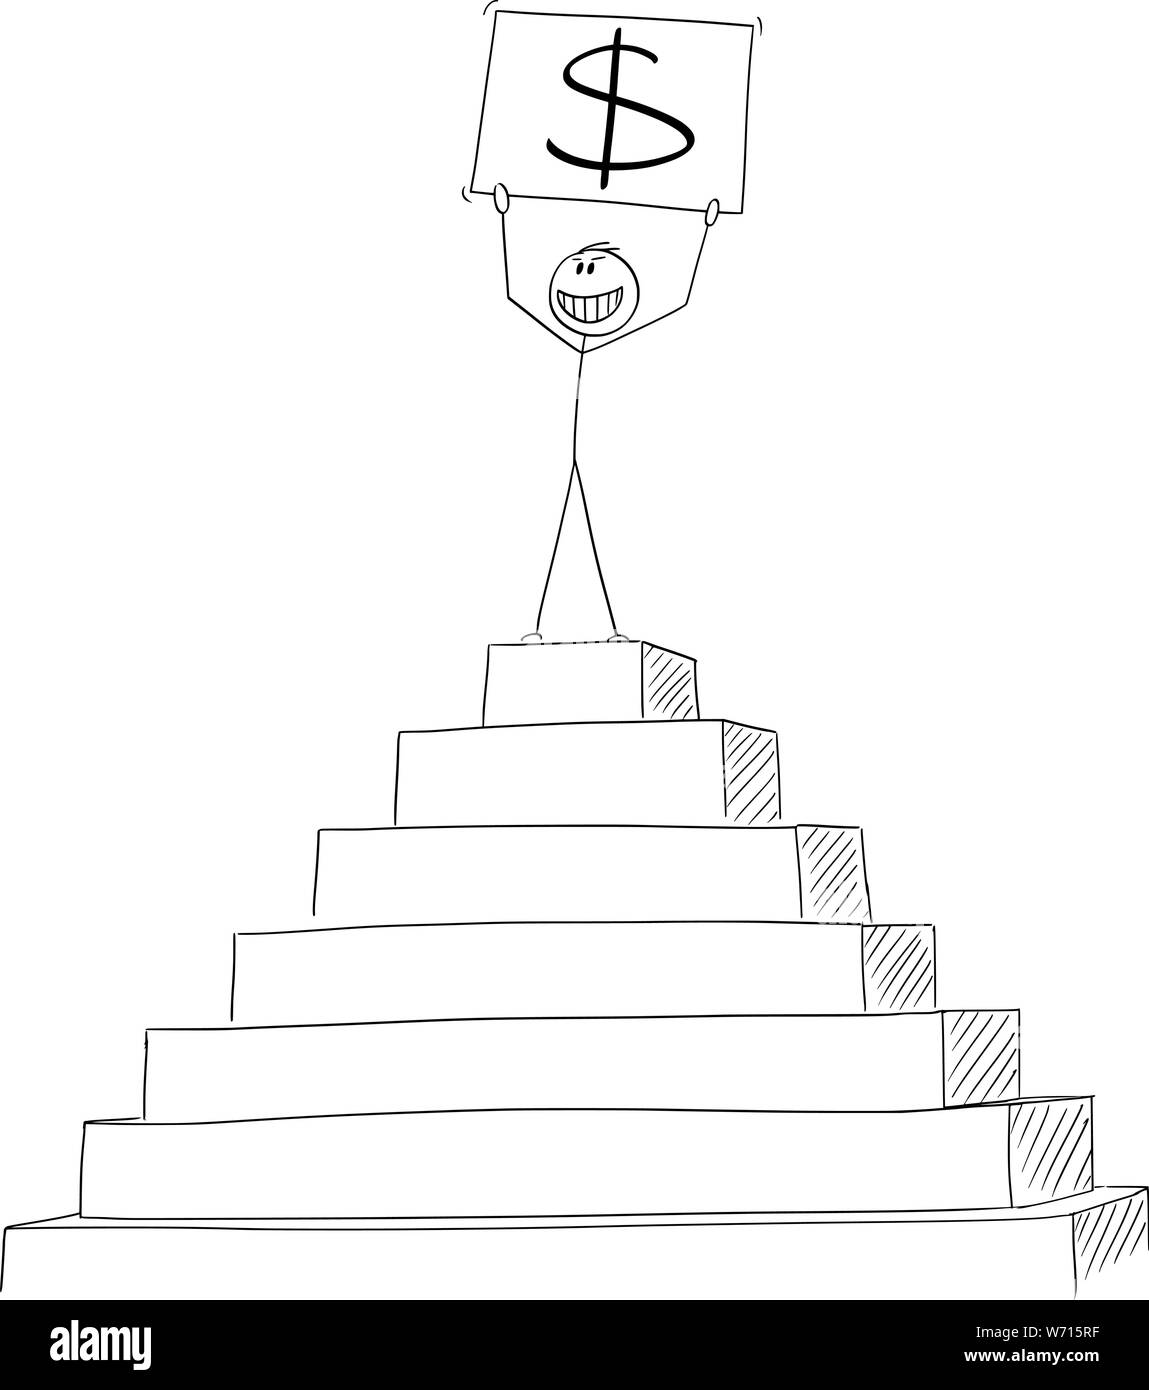 Vector cartoon stick figura disegno illustrazione concettuale di uomo di successo o imprenditore che celebra il successo finanziario sul picco della piramide con il simbolo del dollaro nelle mani. Illustrazione Vettoriale